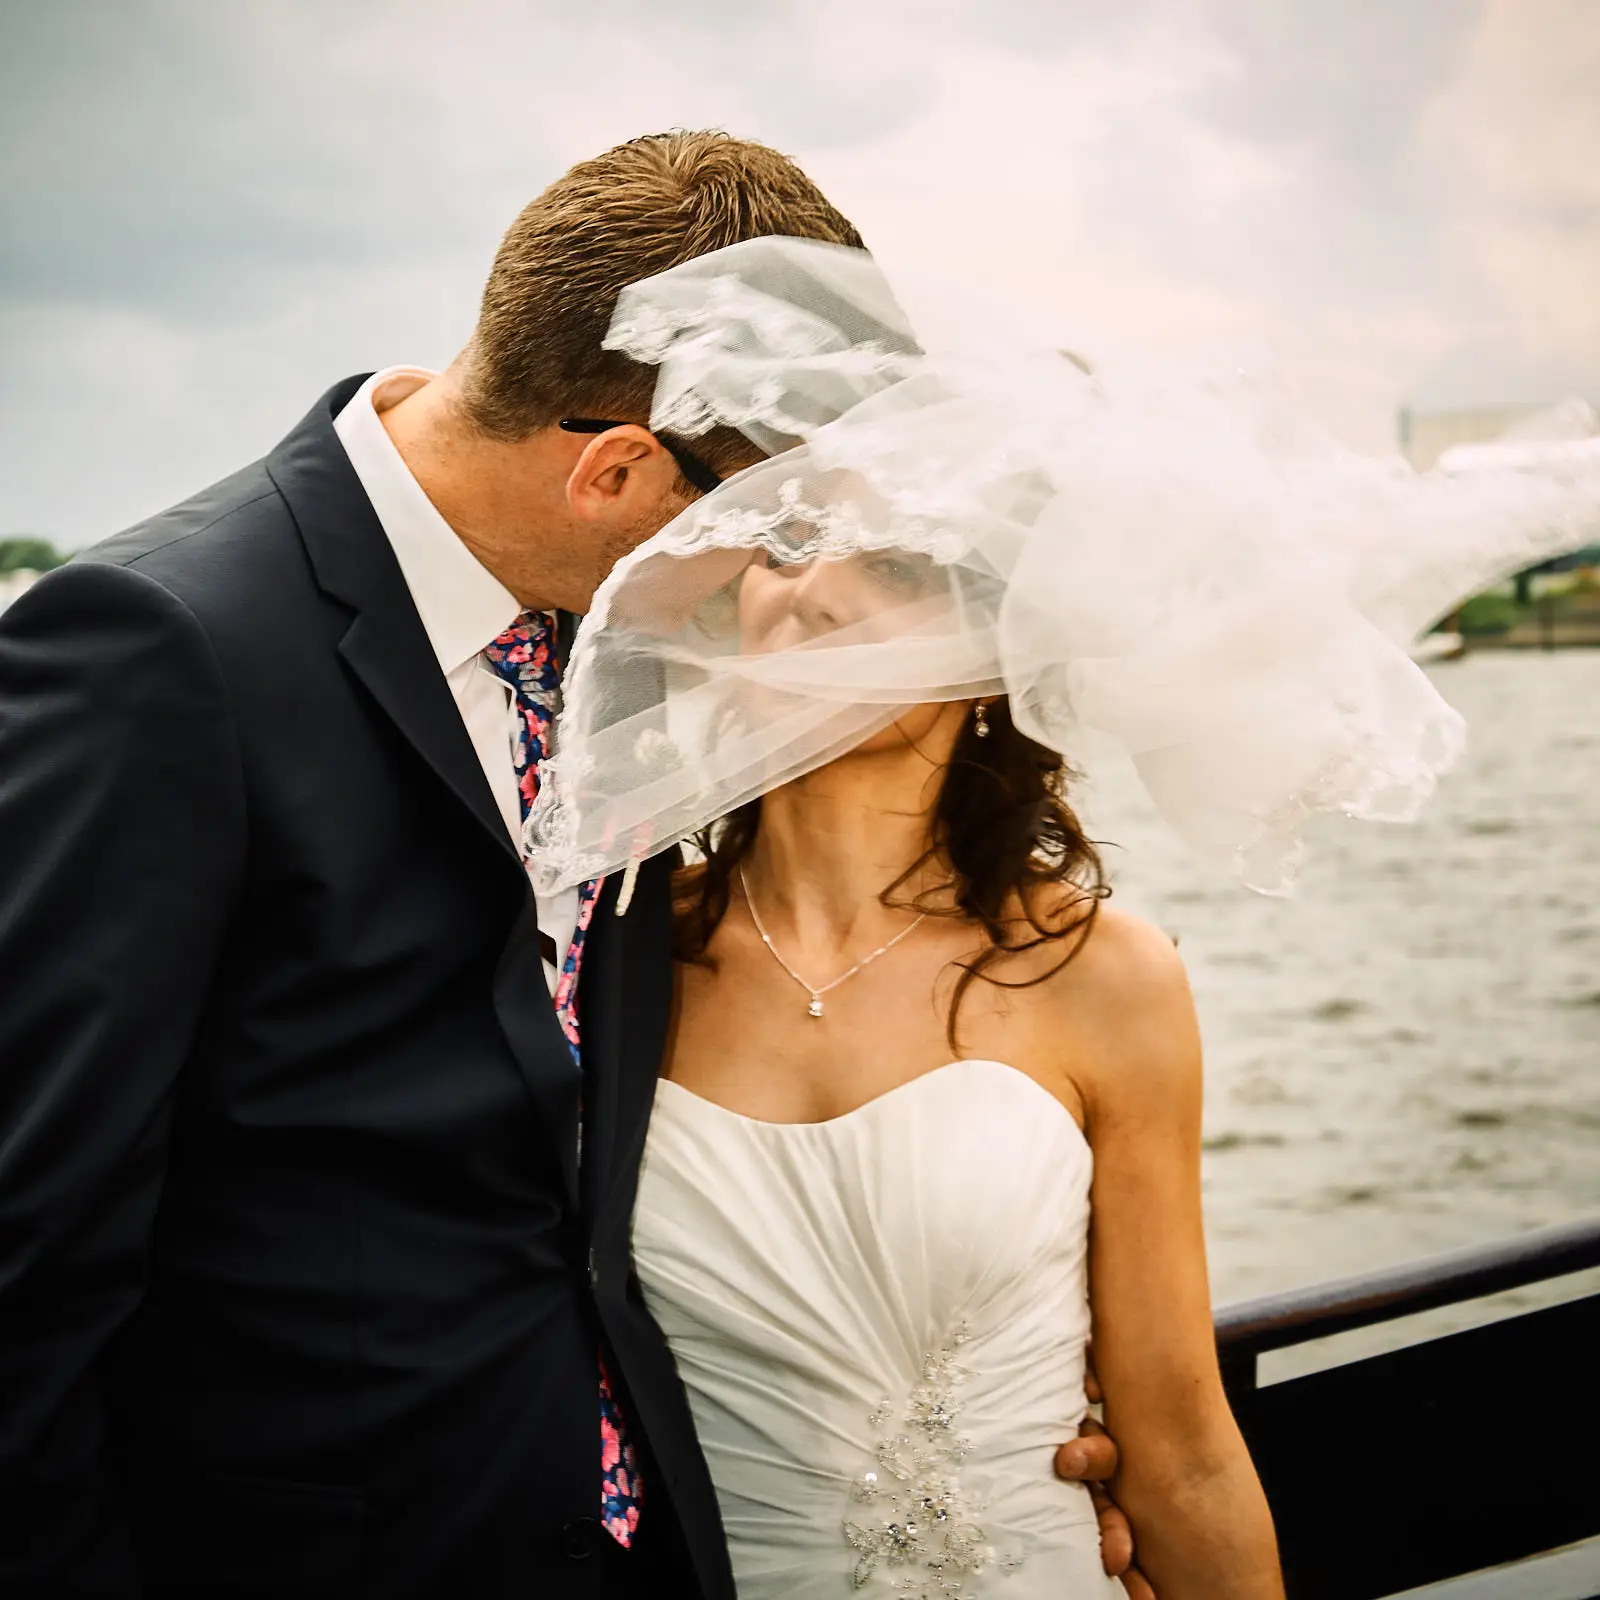 Hochzeitsfotograf Hamburg Hafen. Eine traumhafte Kulisse für traumhafte Momente.